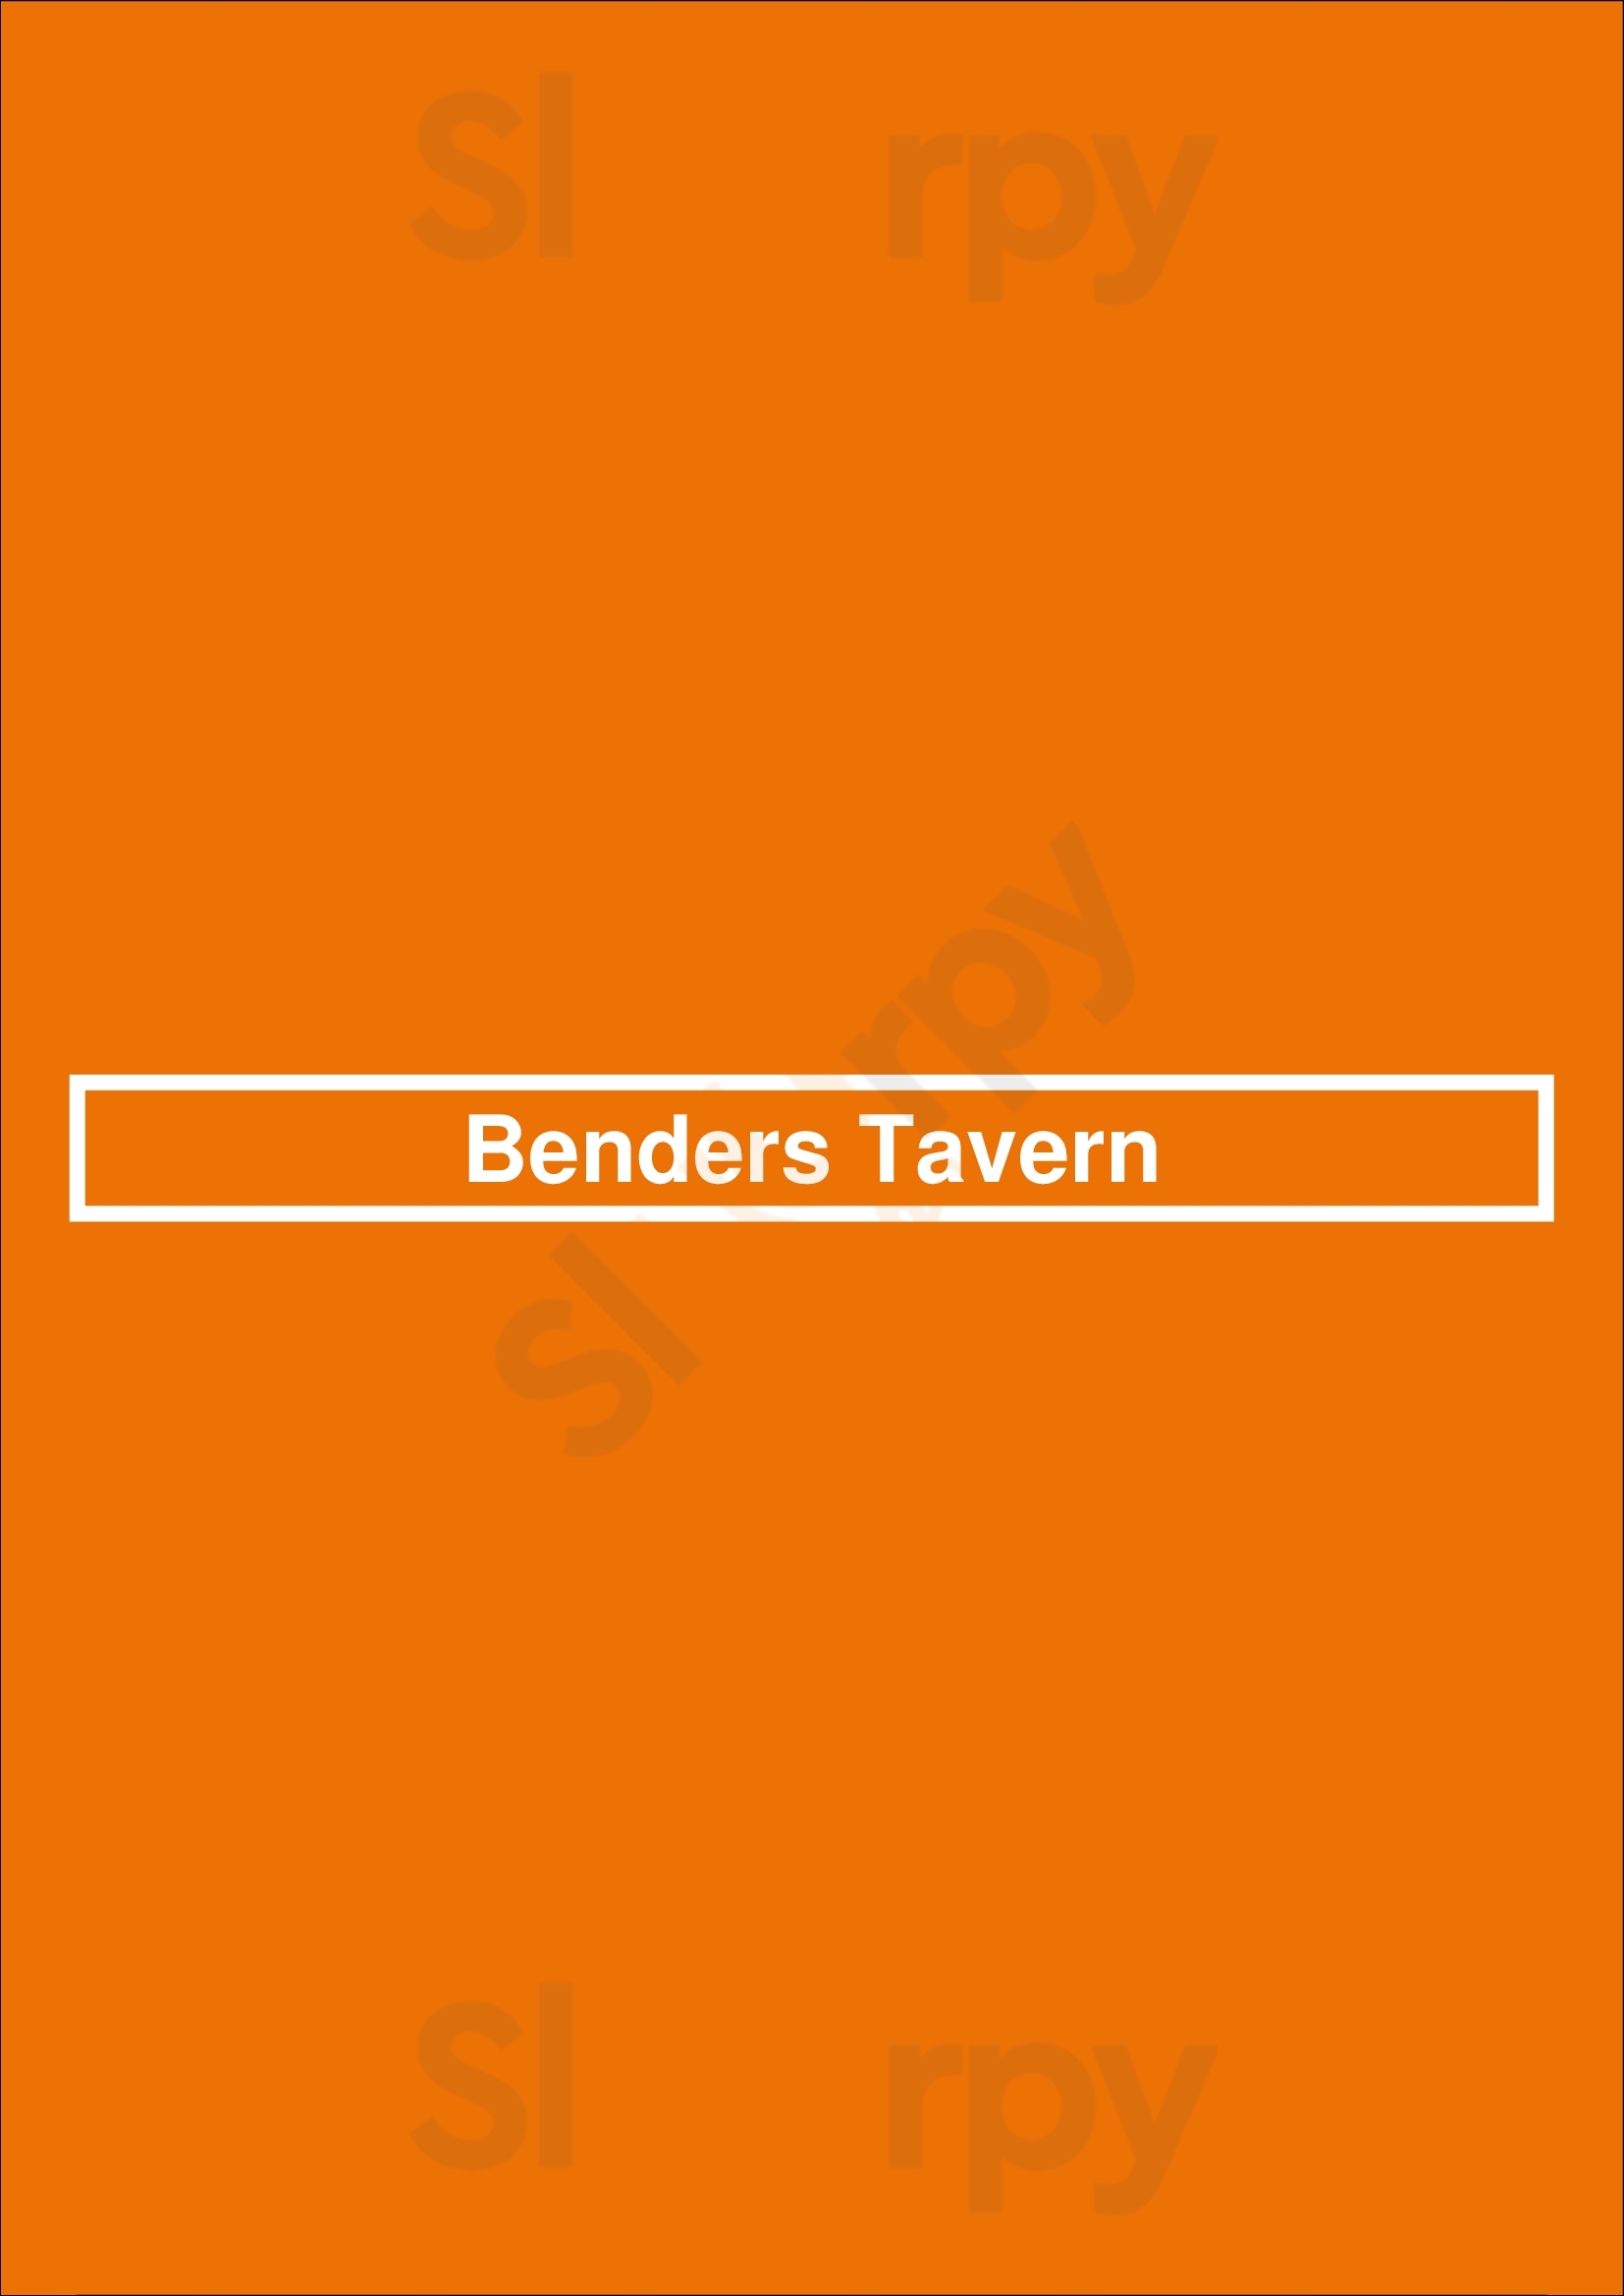 Benders Tavern Canton Menu - 1